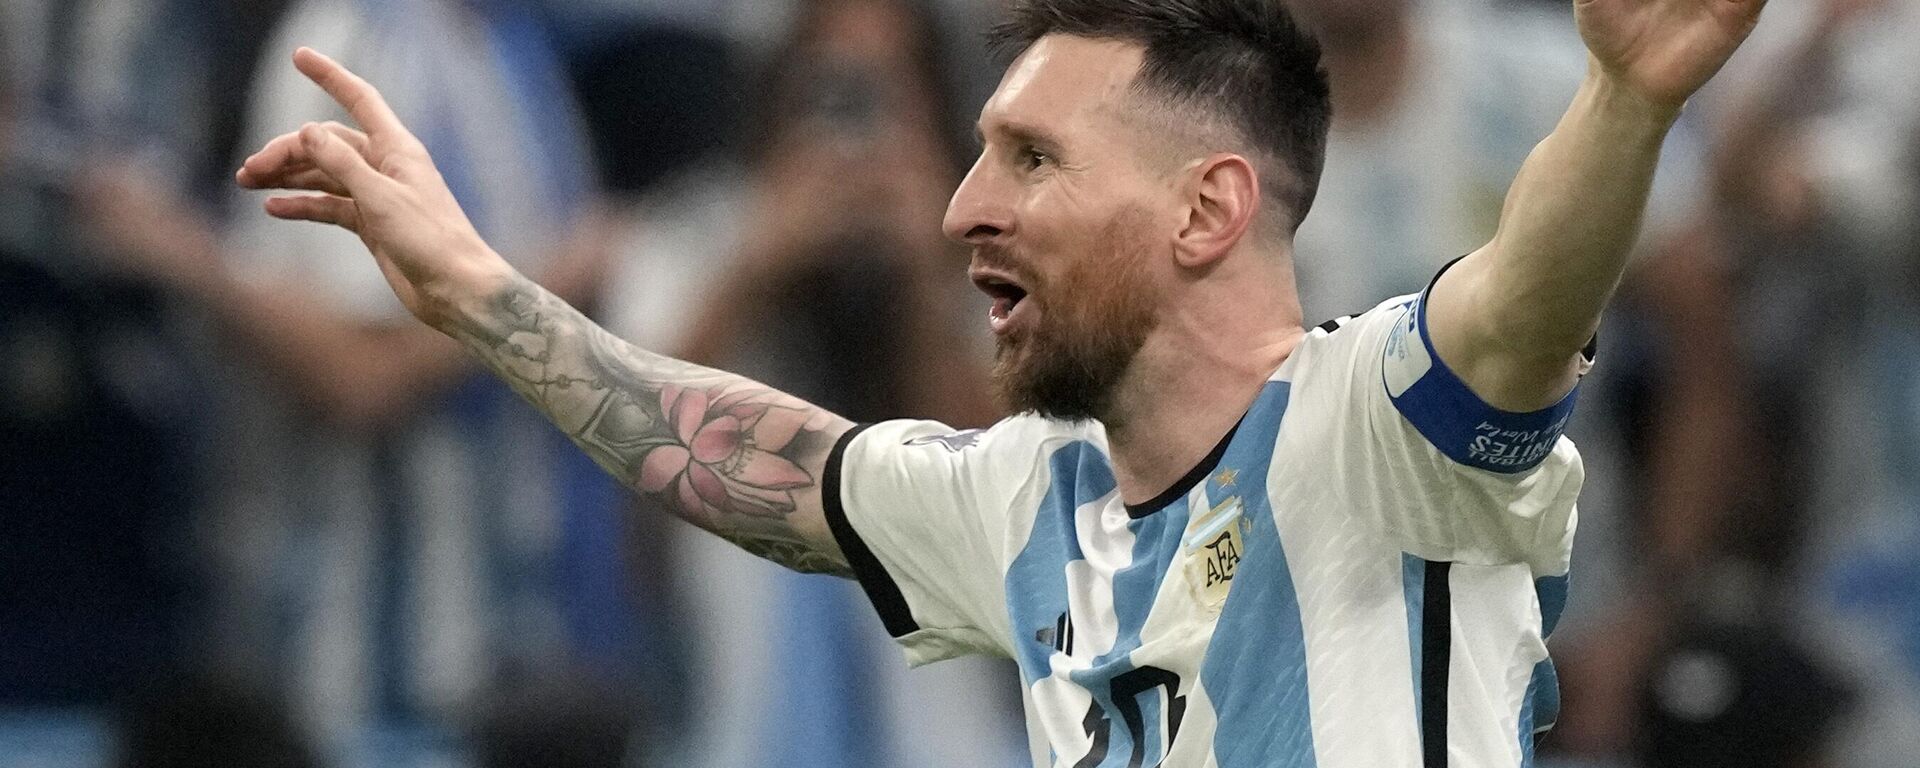 El argentino Lionel Messi celebra tras marcar el tercer gol de su equipo durante el partido final de la Copa del Mundo de fútbol entre Argentina y Francia en el Estadio Lusail en Lusail, Catar, el domingo 18 de diciembre de 2022.   - Sputnik Mundo, 1920, 18.12.2022